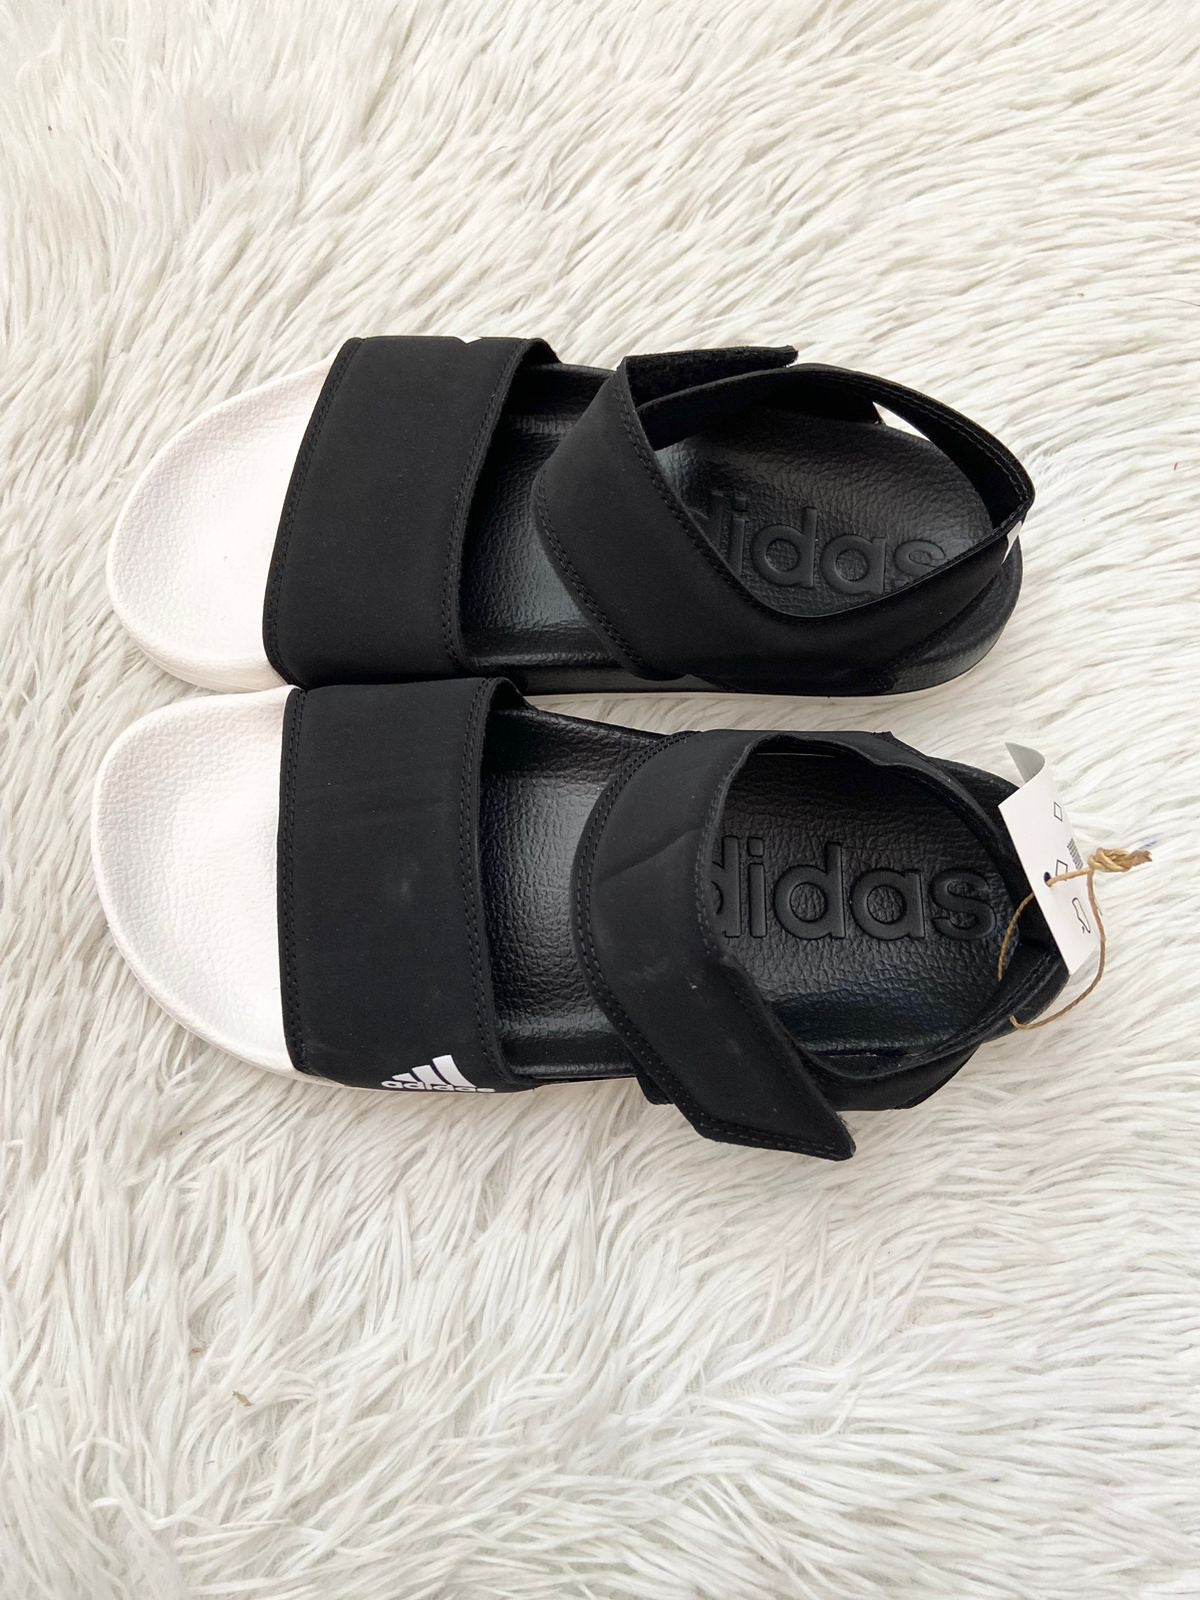 Sandalias ADIDAS original, negras con letras y logotipo de la marca en un lado de color blanco.